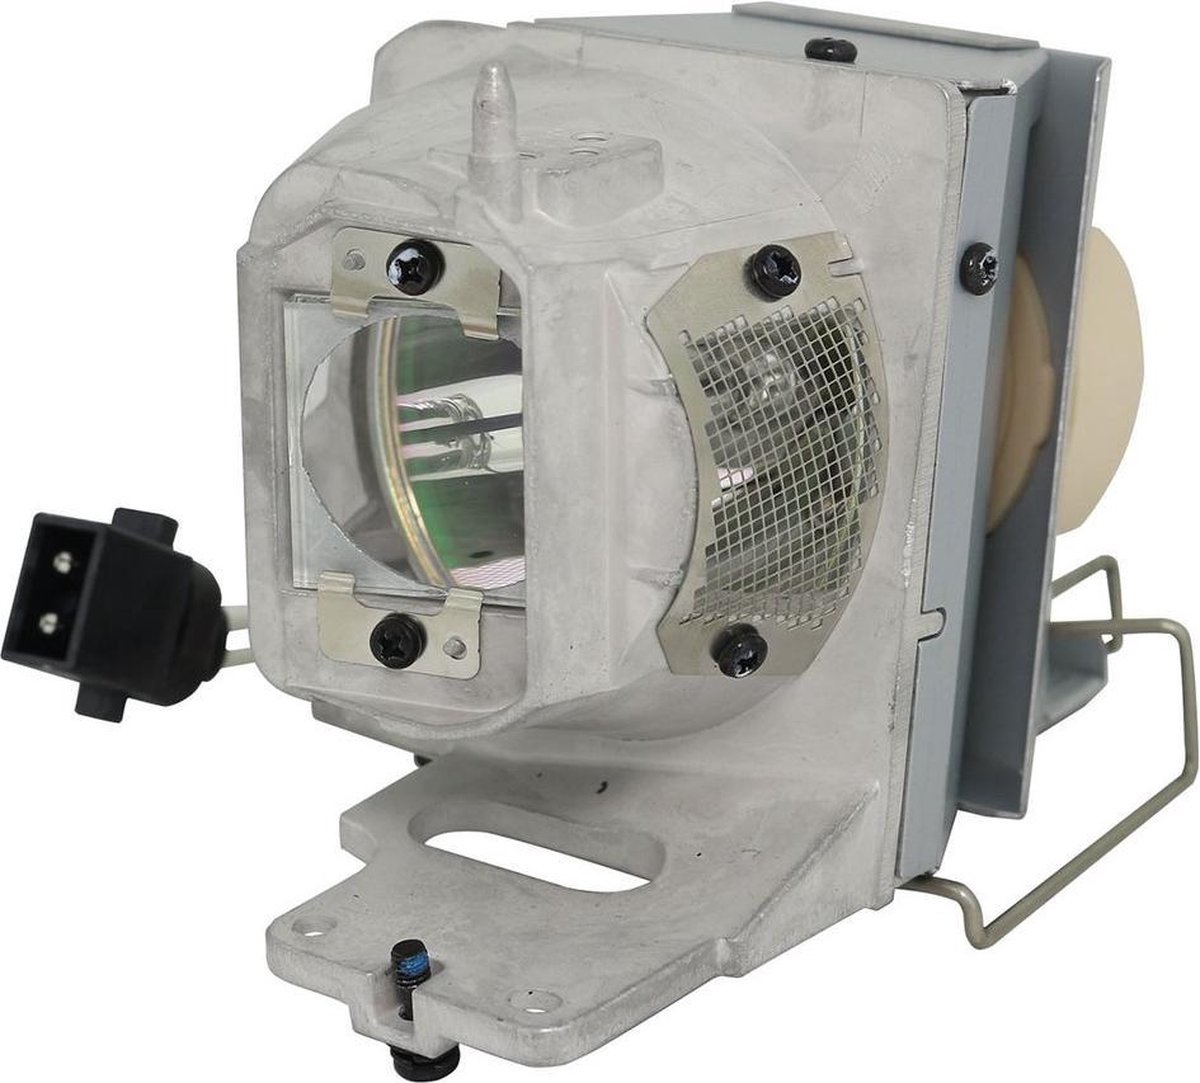 Beamerlamp geschikt voor de OPTOMA UHD60 beamer, lamp code BL-FP240E / SP.78V01GC01. Bevat originele UHP lamp, prestaties gelijk aan origineel.